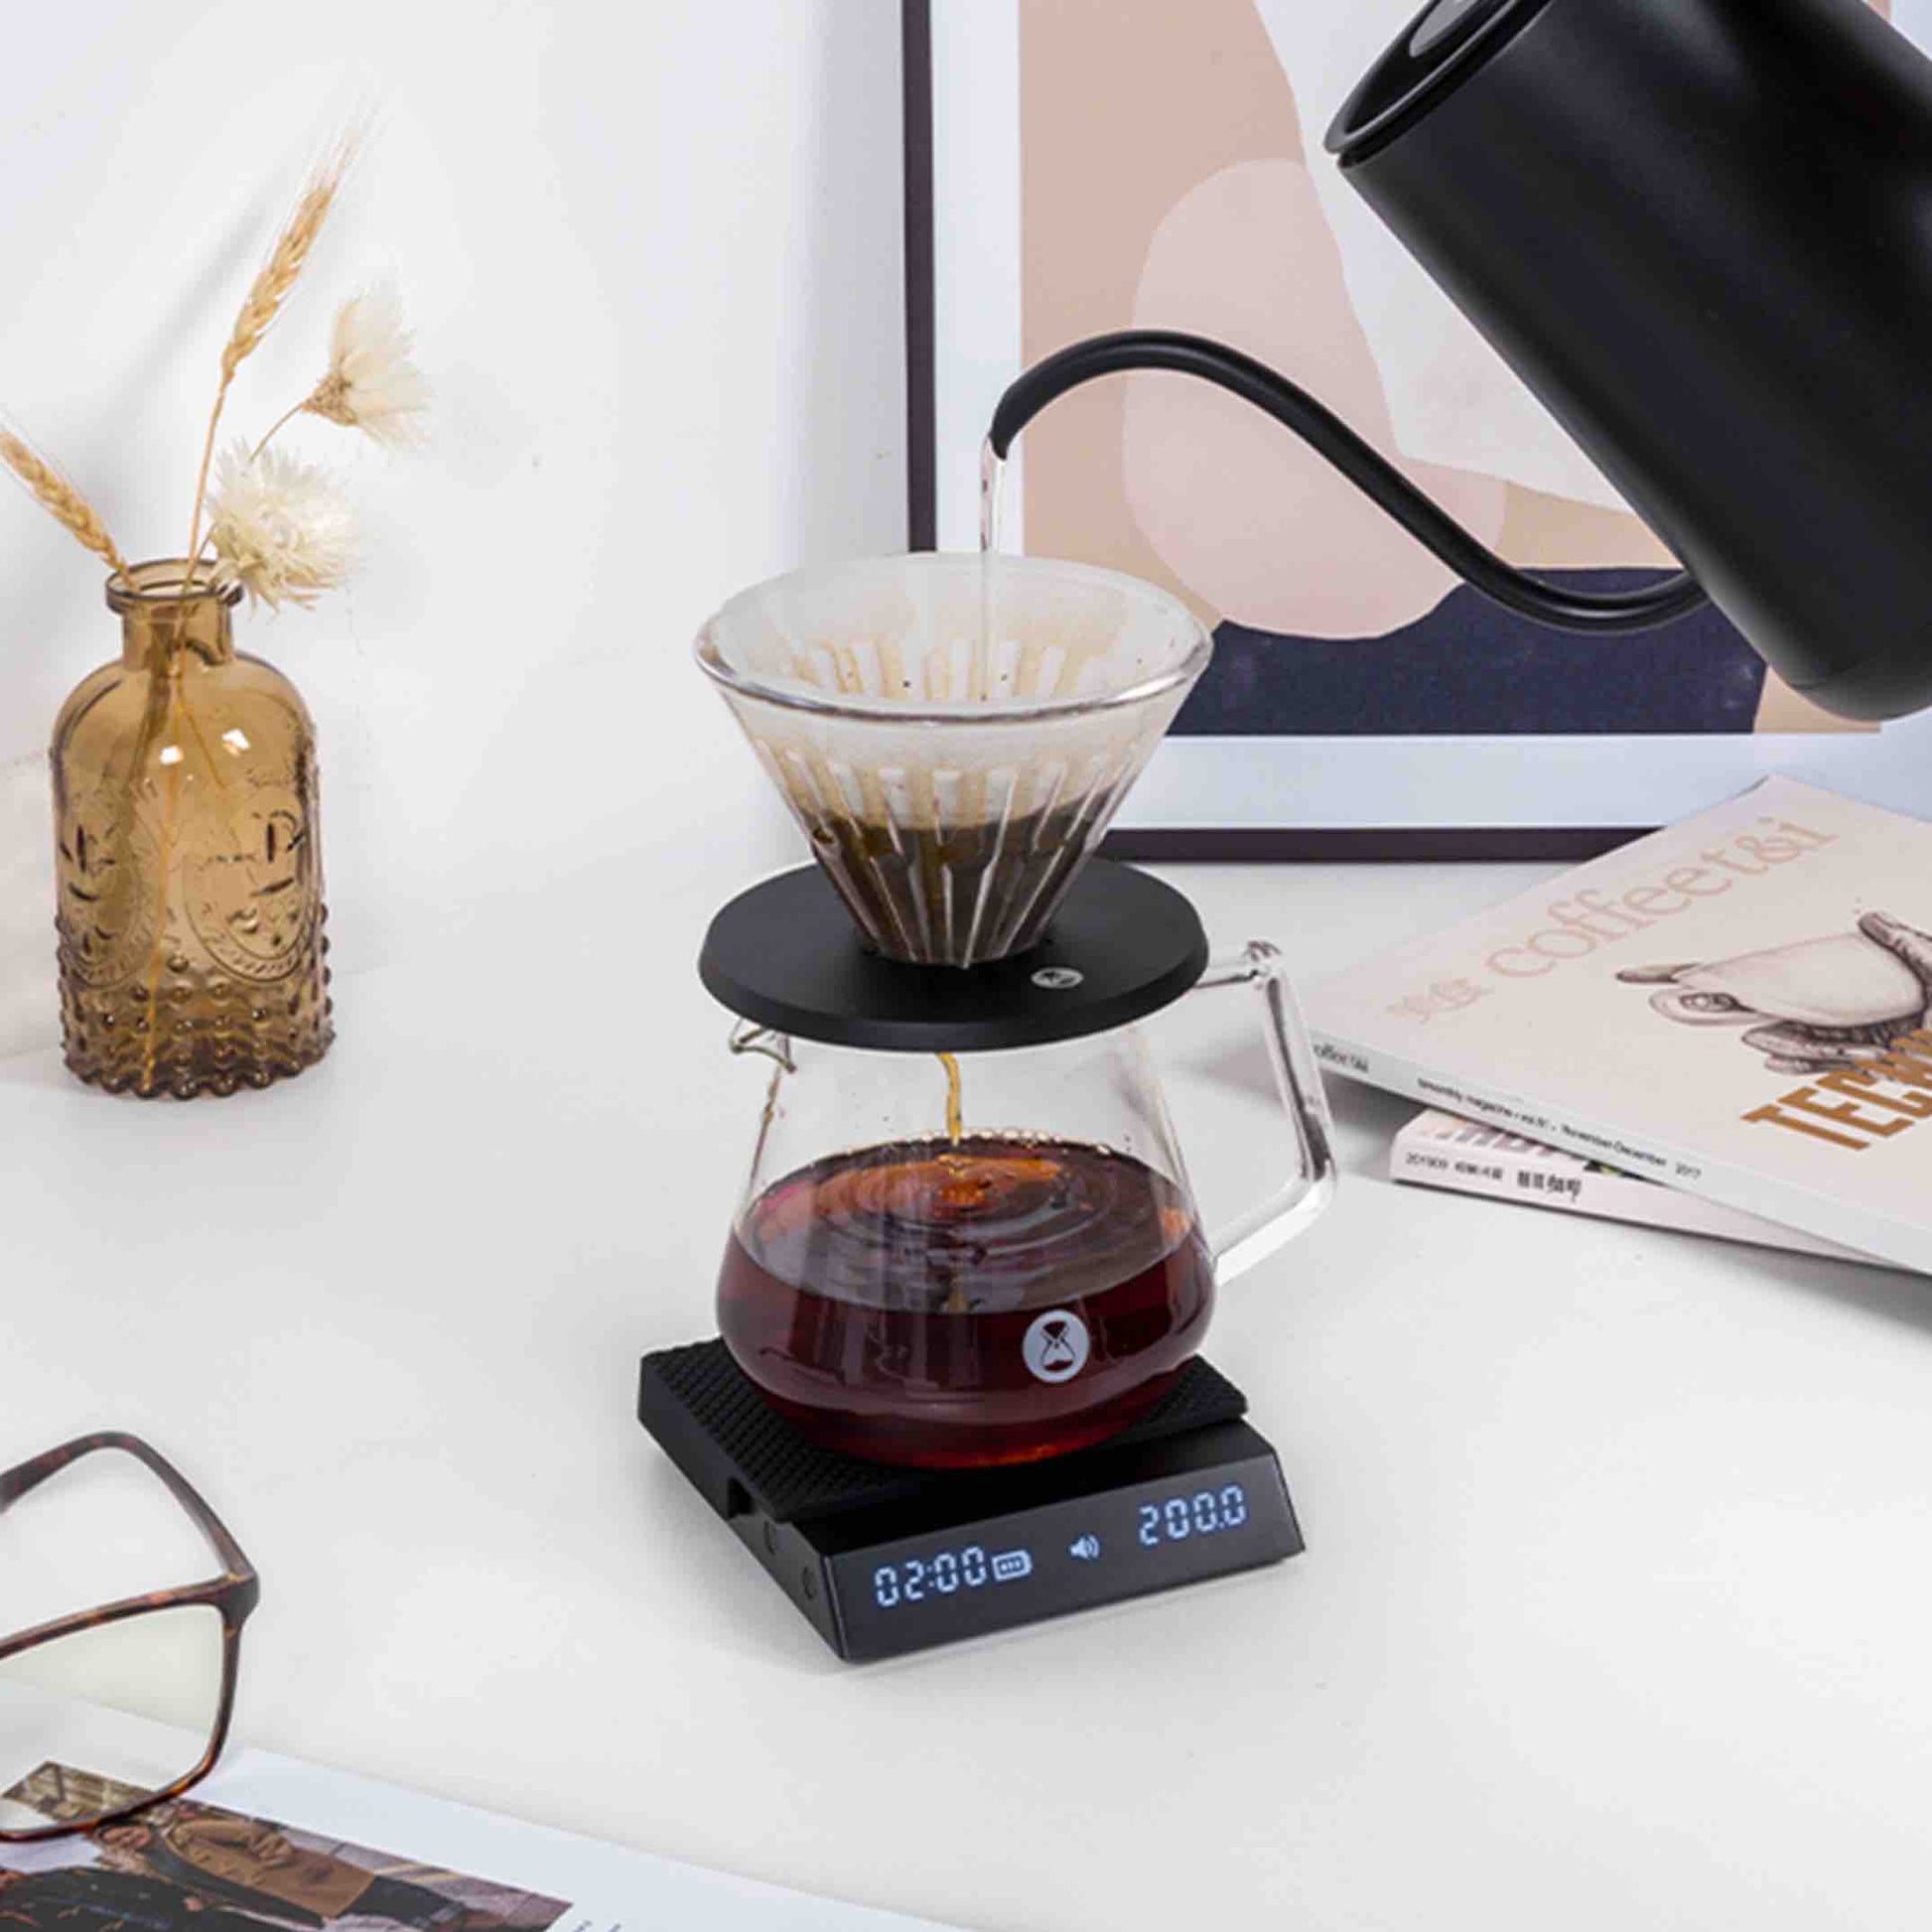 Timemore Black Mirror Nano Coffee Scale Lifestyle 5 1